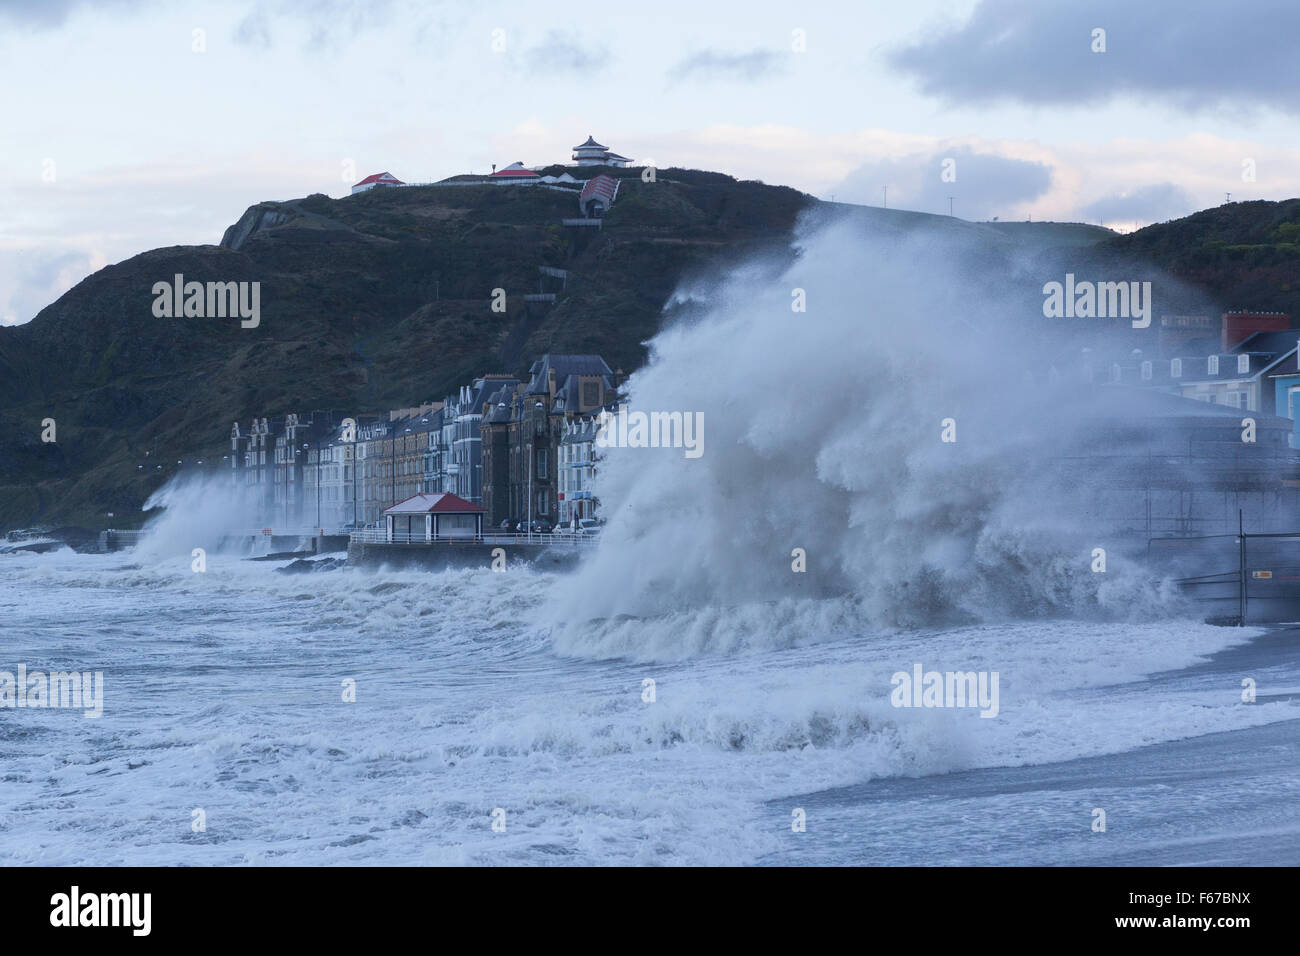 Pays de Galles Aberystwyth UK 13 novembre 2015 Storm Abigail lashes out at Aberystwyth ce matin avec furious vagues tandis que deux constructeurs d'essayer de travailler sur l'échafaudage du nouveau kiosque sur la promenade. Crédit : Ian Jones/Alamy Live News Banque D'Images